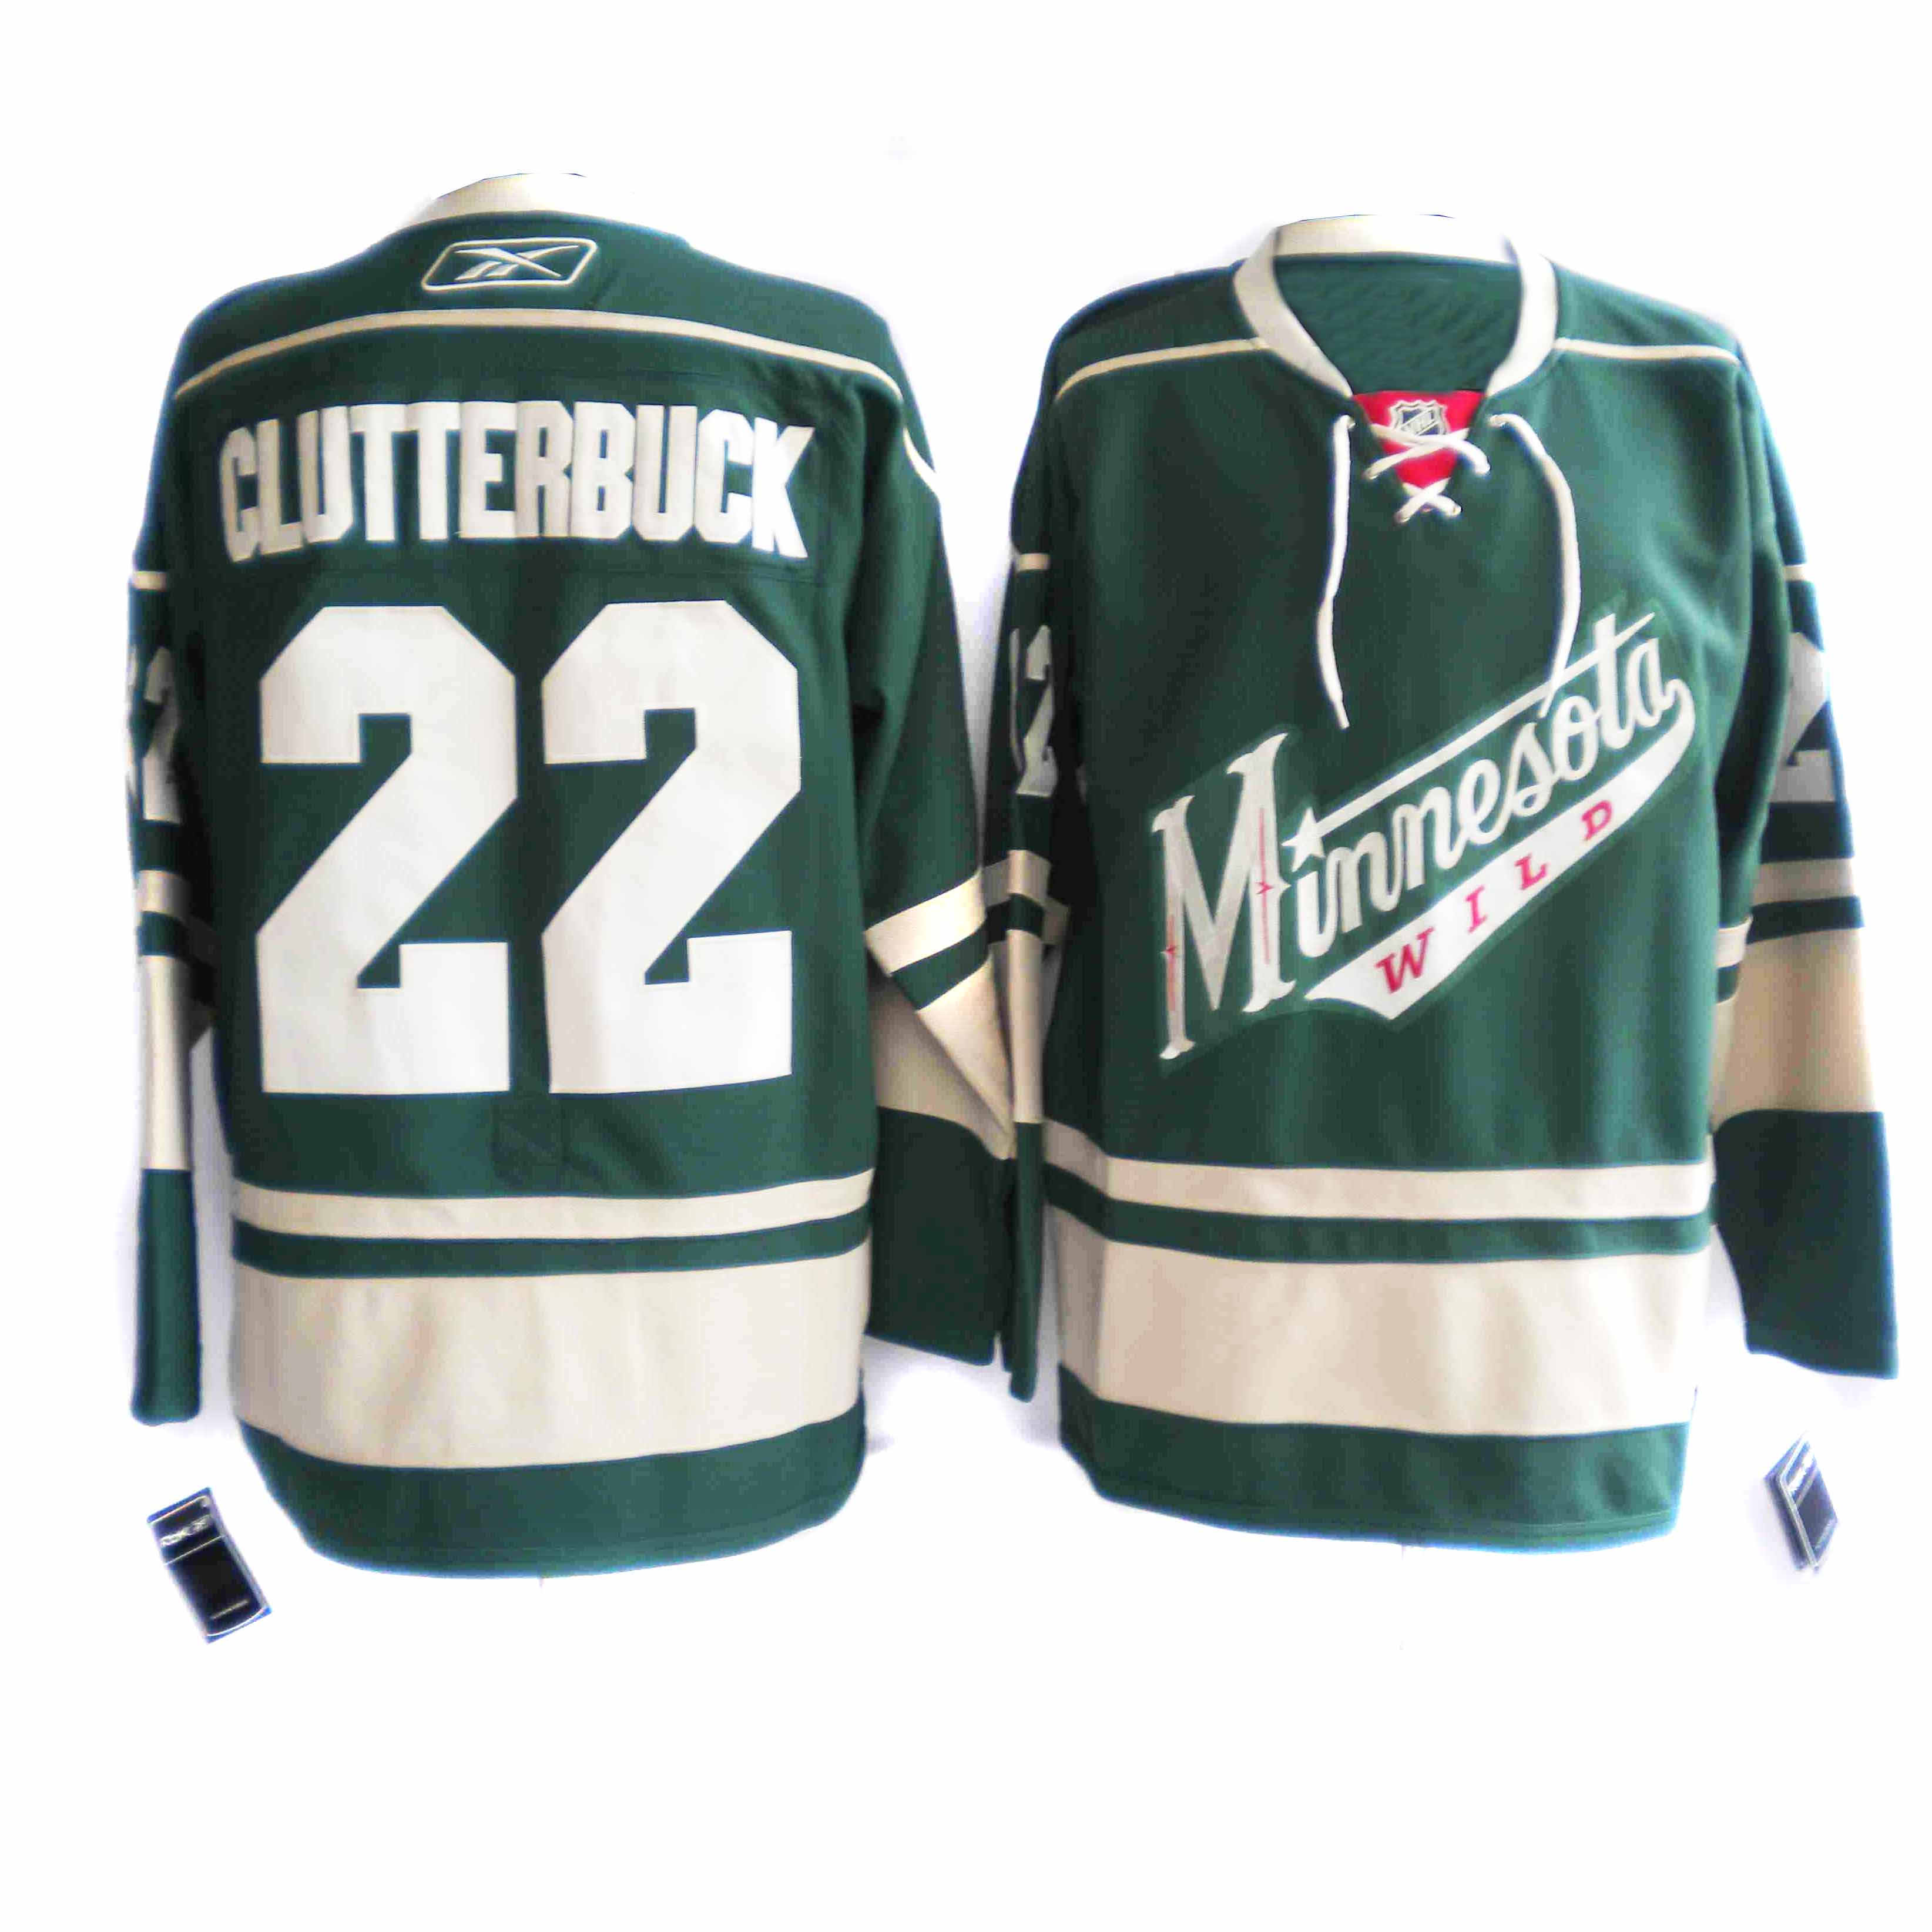 Green  Clutterbuck jersey, Minnesota Wild #22 NHL jersey